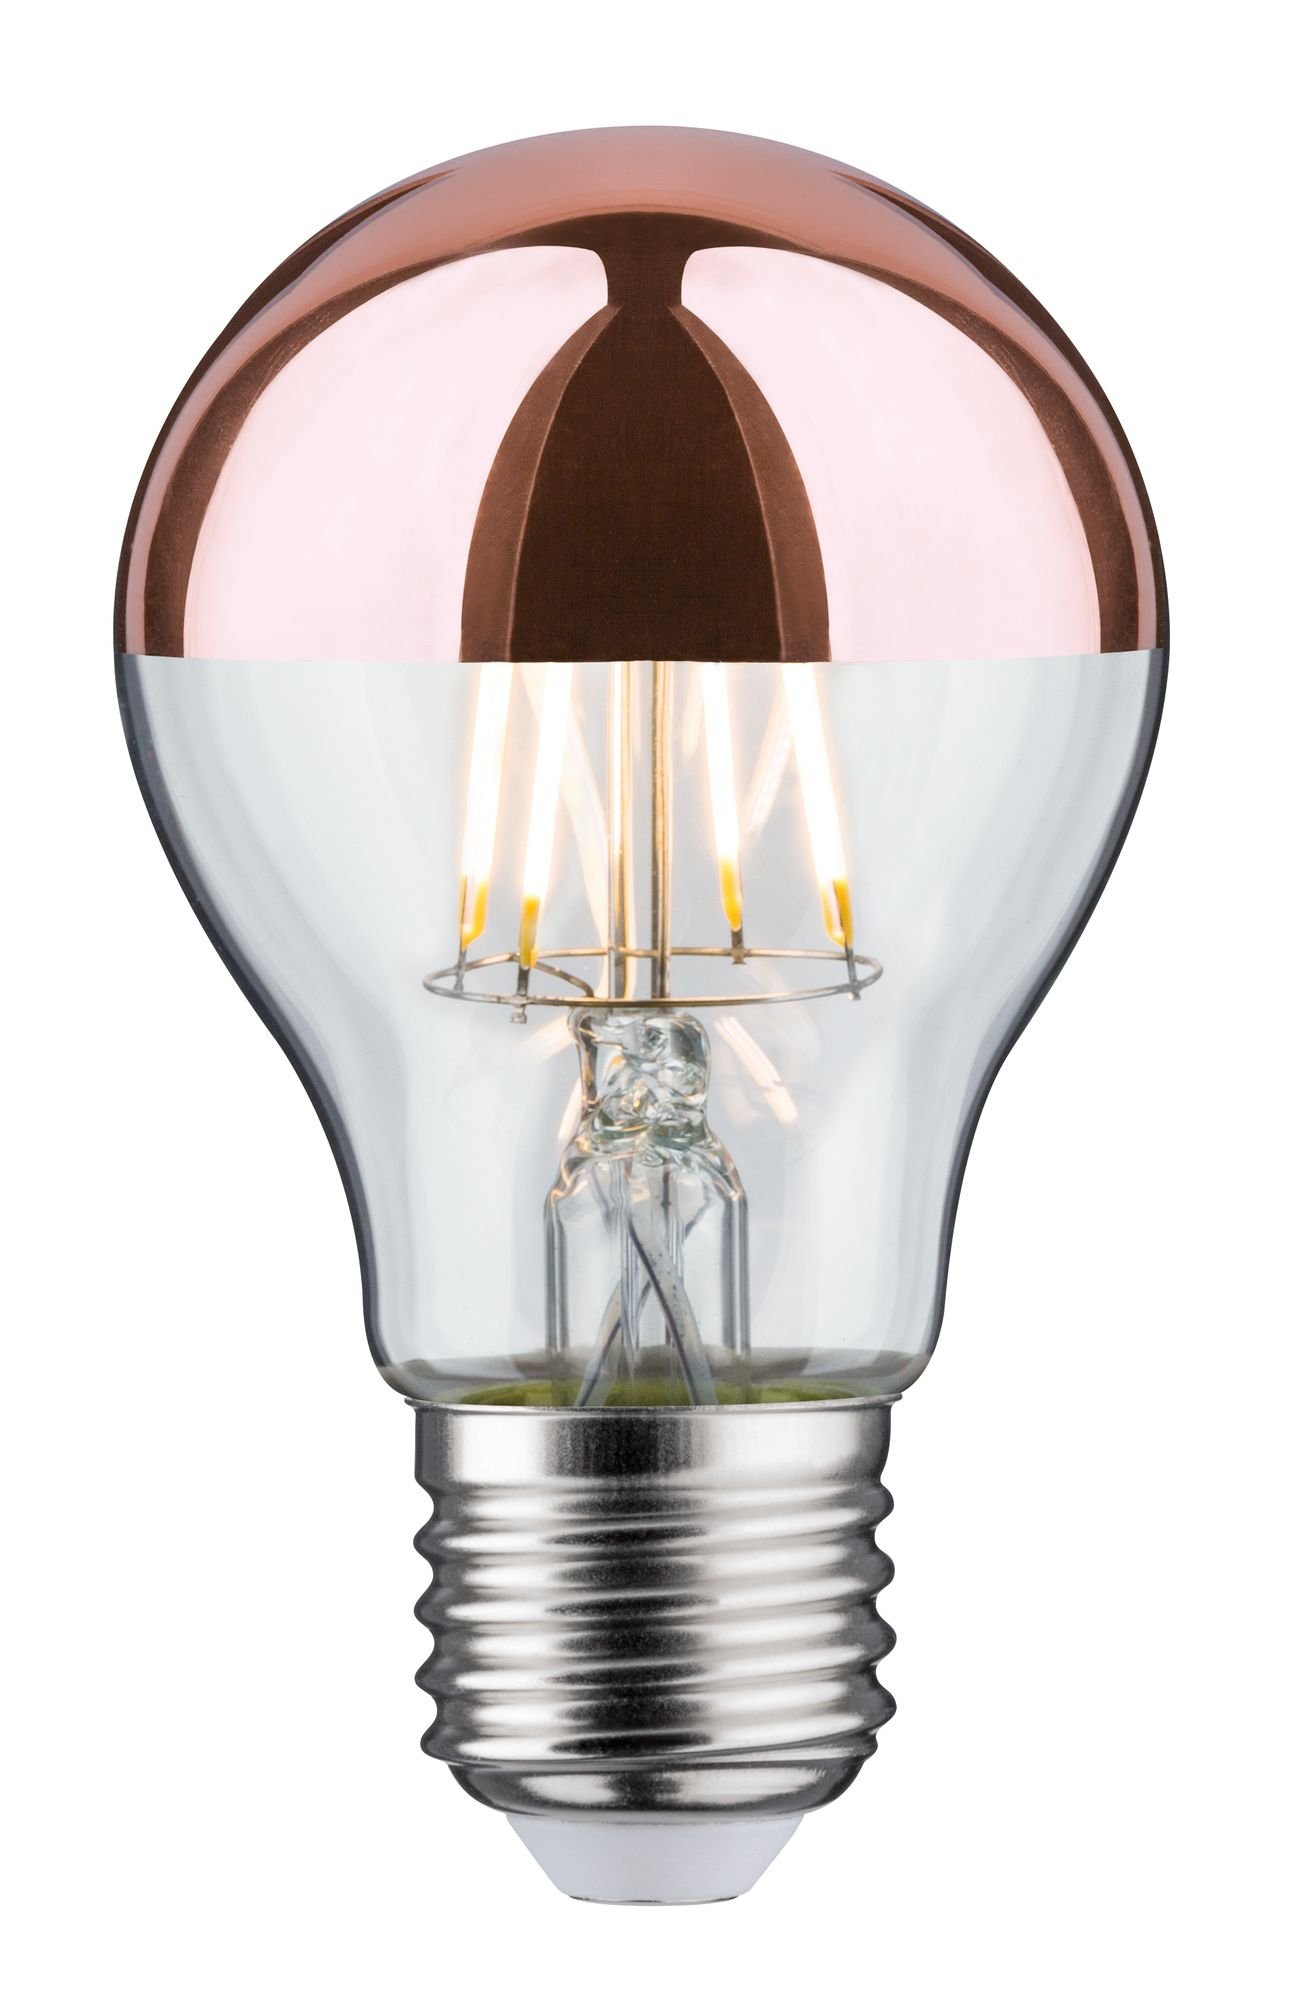 Paulmann Nice prix ESL Ampoule spirale à économie dénergie 9 W 